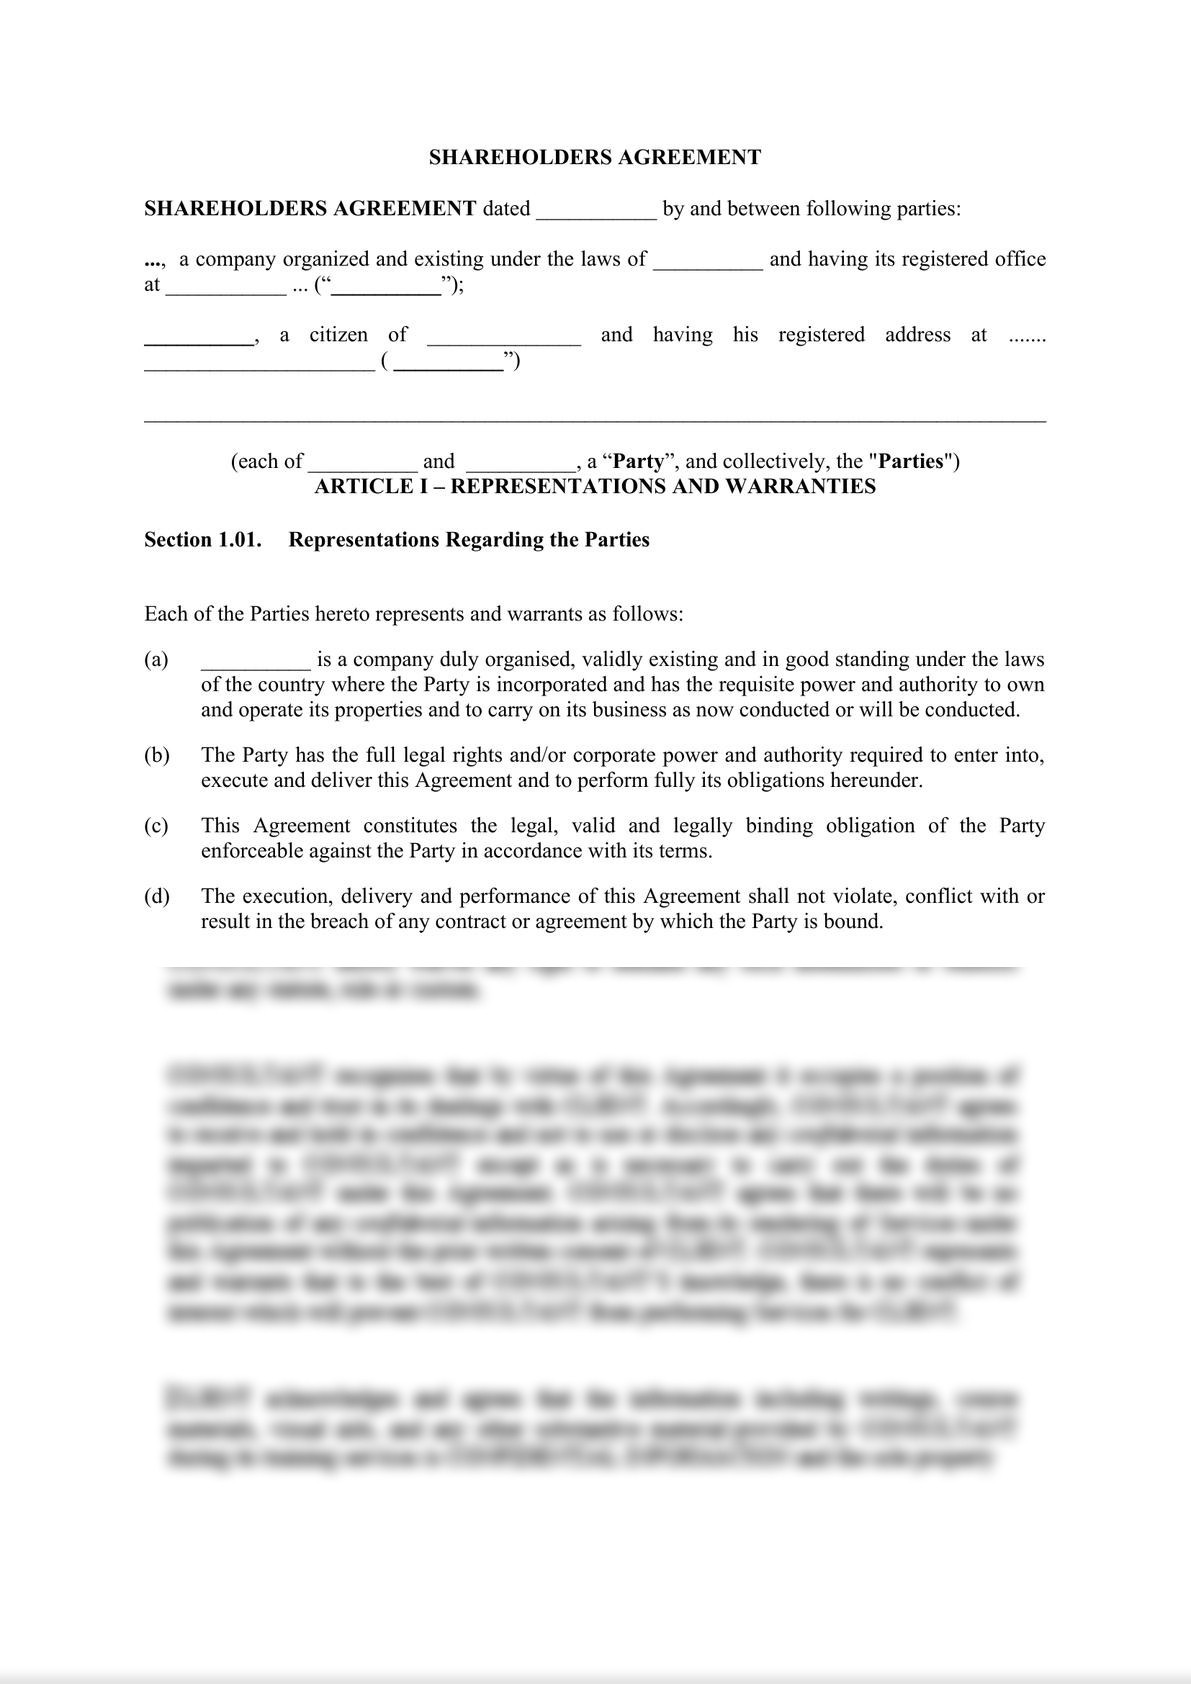 Shareholders agreement-1